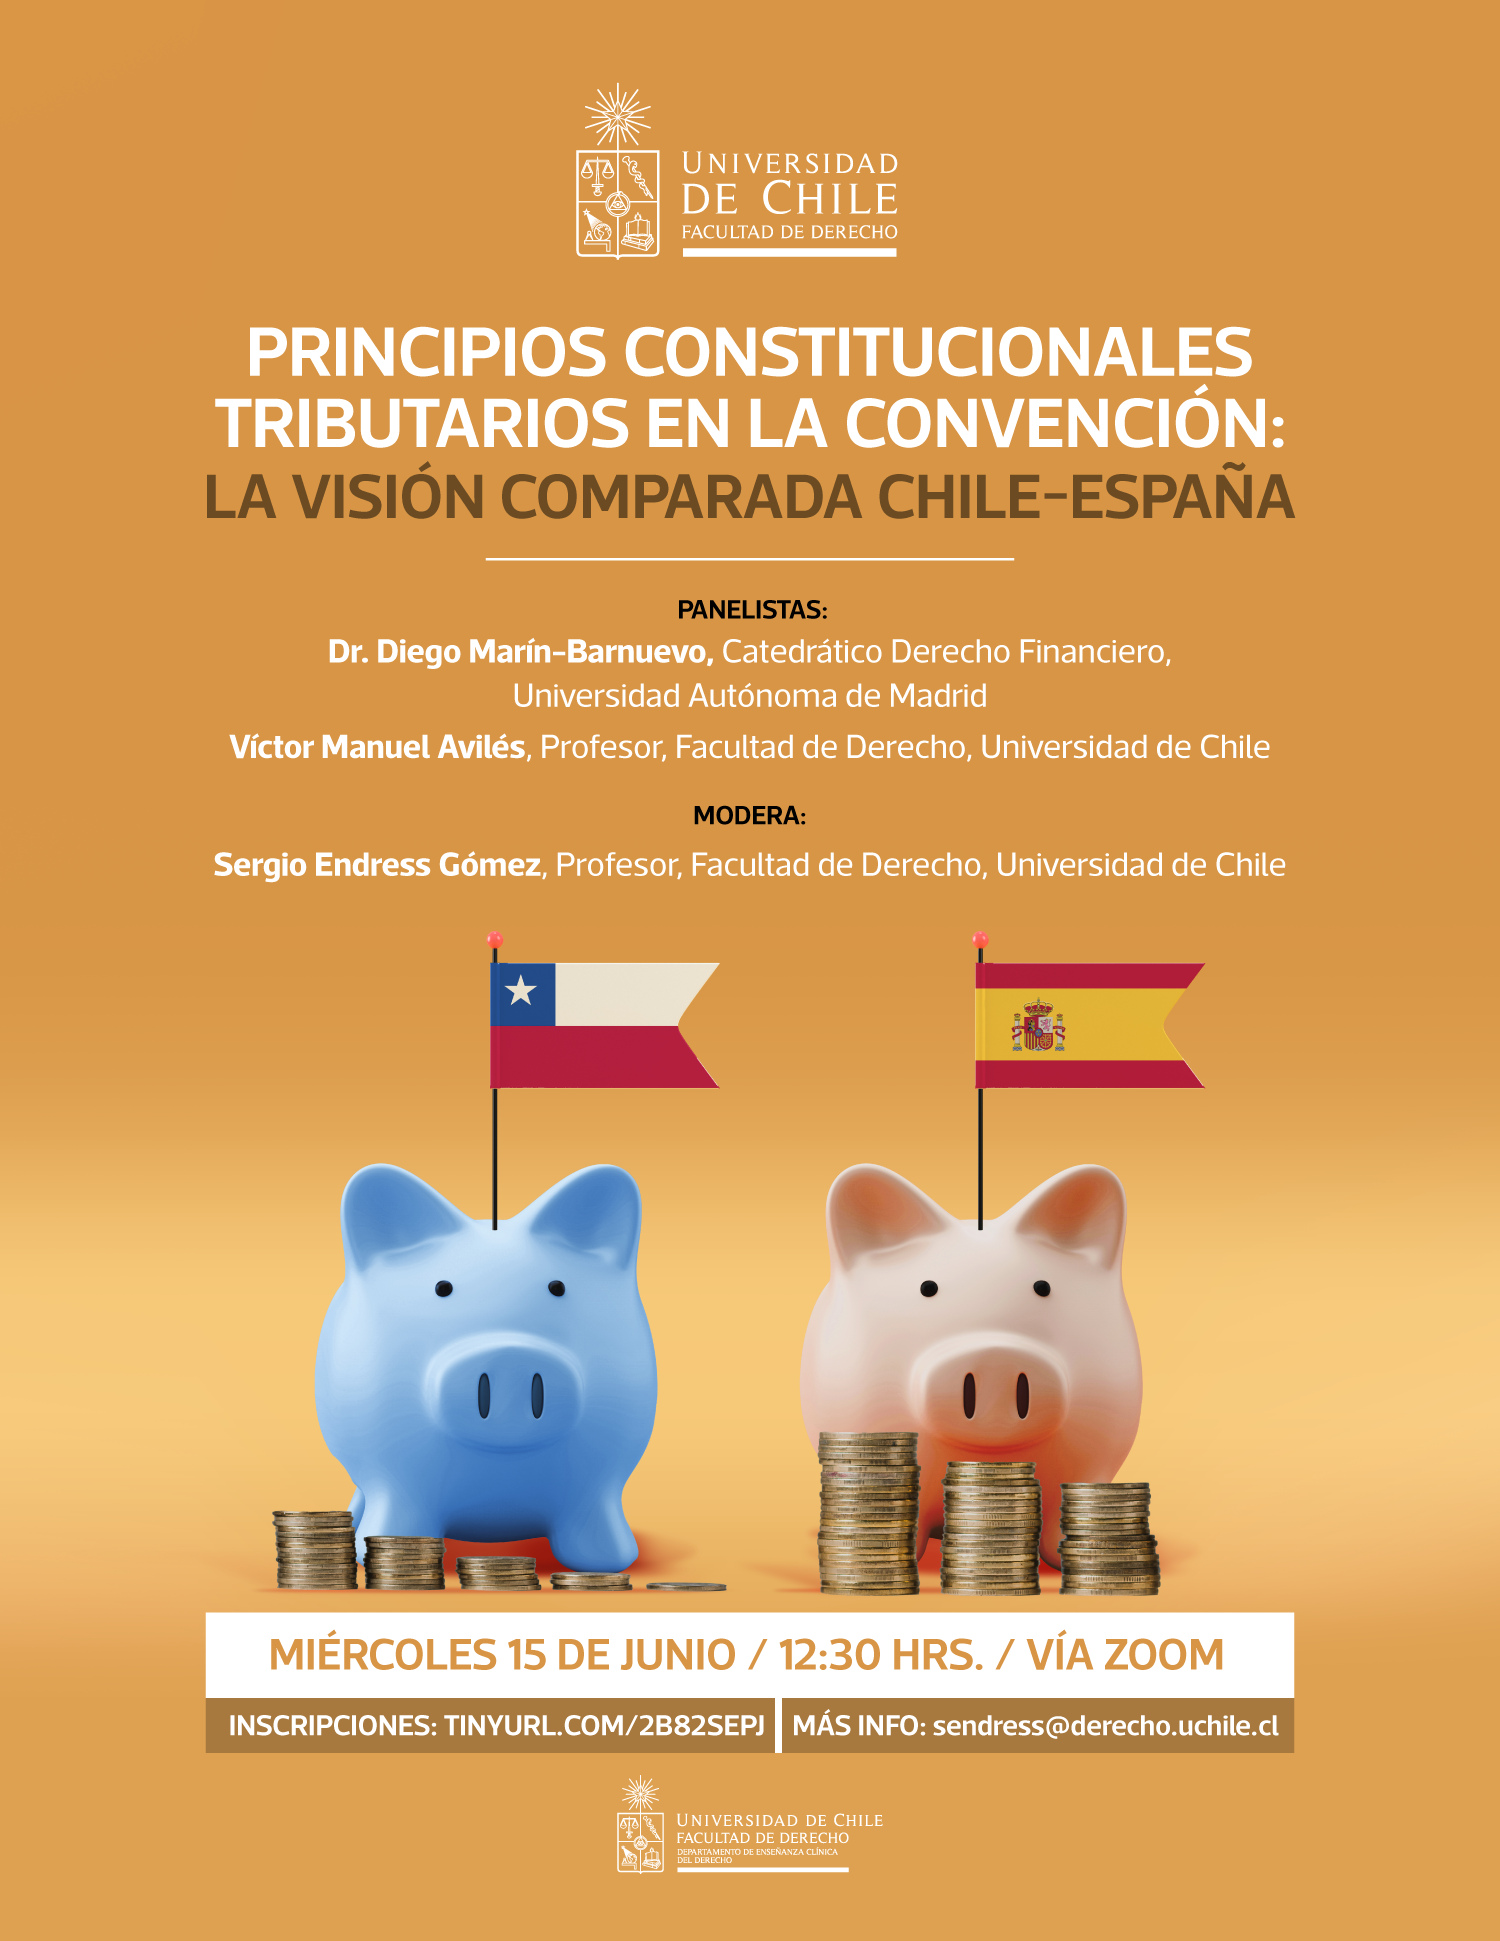 Universidad de Chile invita a Seminario "Principios constitucionales tributarios en la Convención: La visión comparada Chile-España"